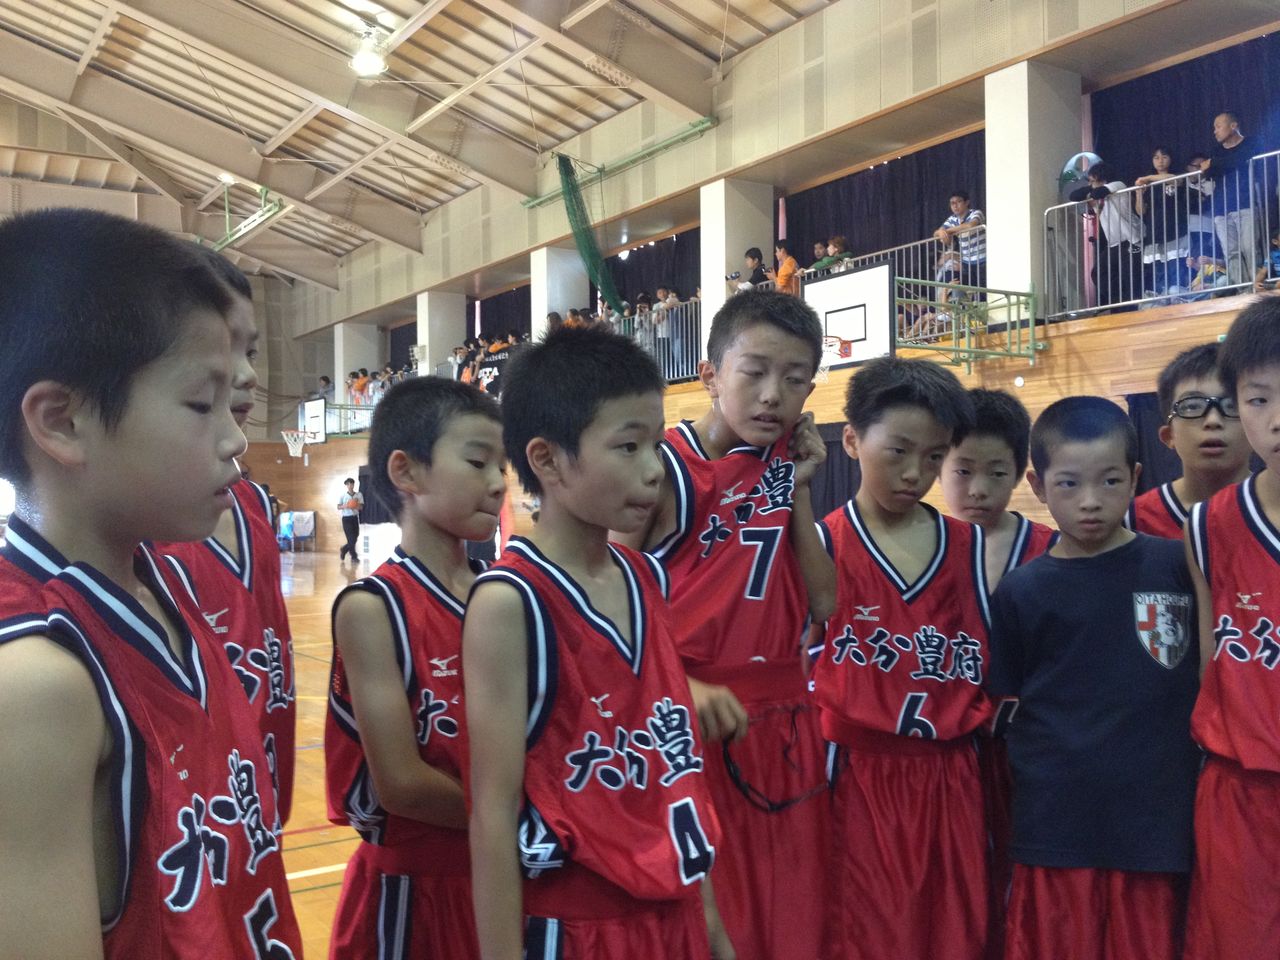 5年生大会 豊府ミニバスケットボールスポーツ少年団 のブログへようこそ